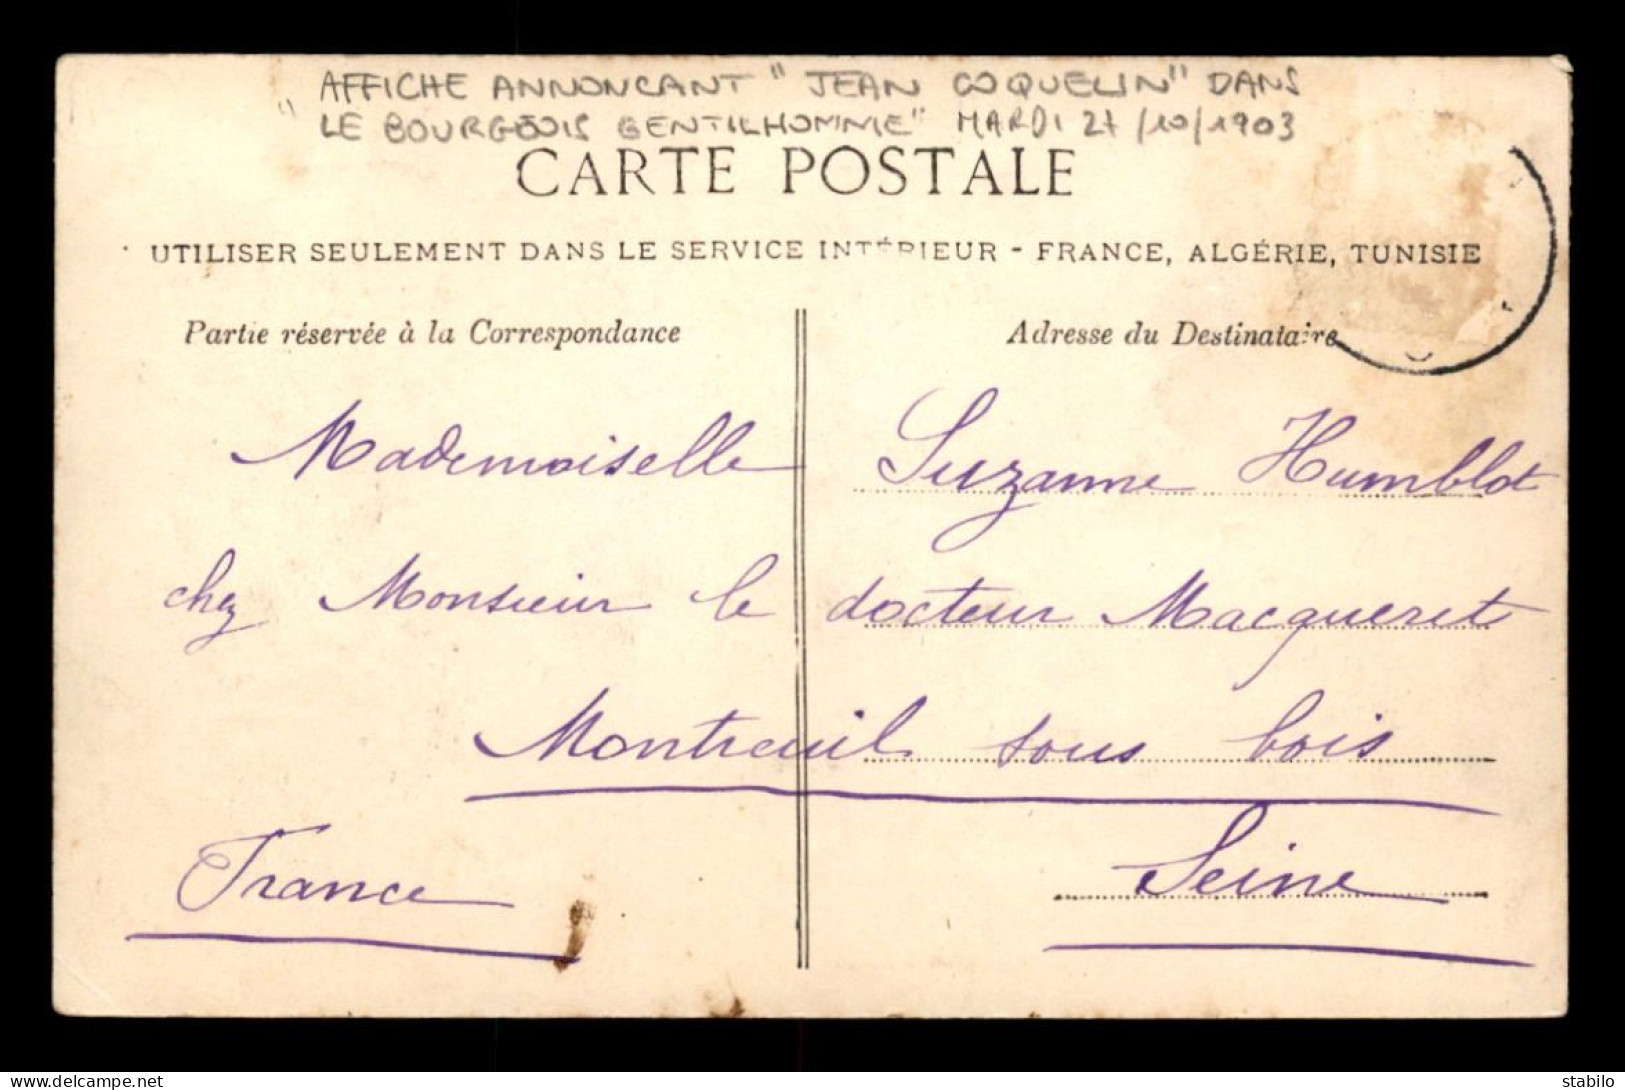 ALGERIE - BLIDA - PORTE D'ALGER - AFFICHE ANNONCANT JEAN COQUELIN DANS LE BOURGEOIS GENTILHOMME LE 21/10/1903 - Blida